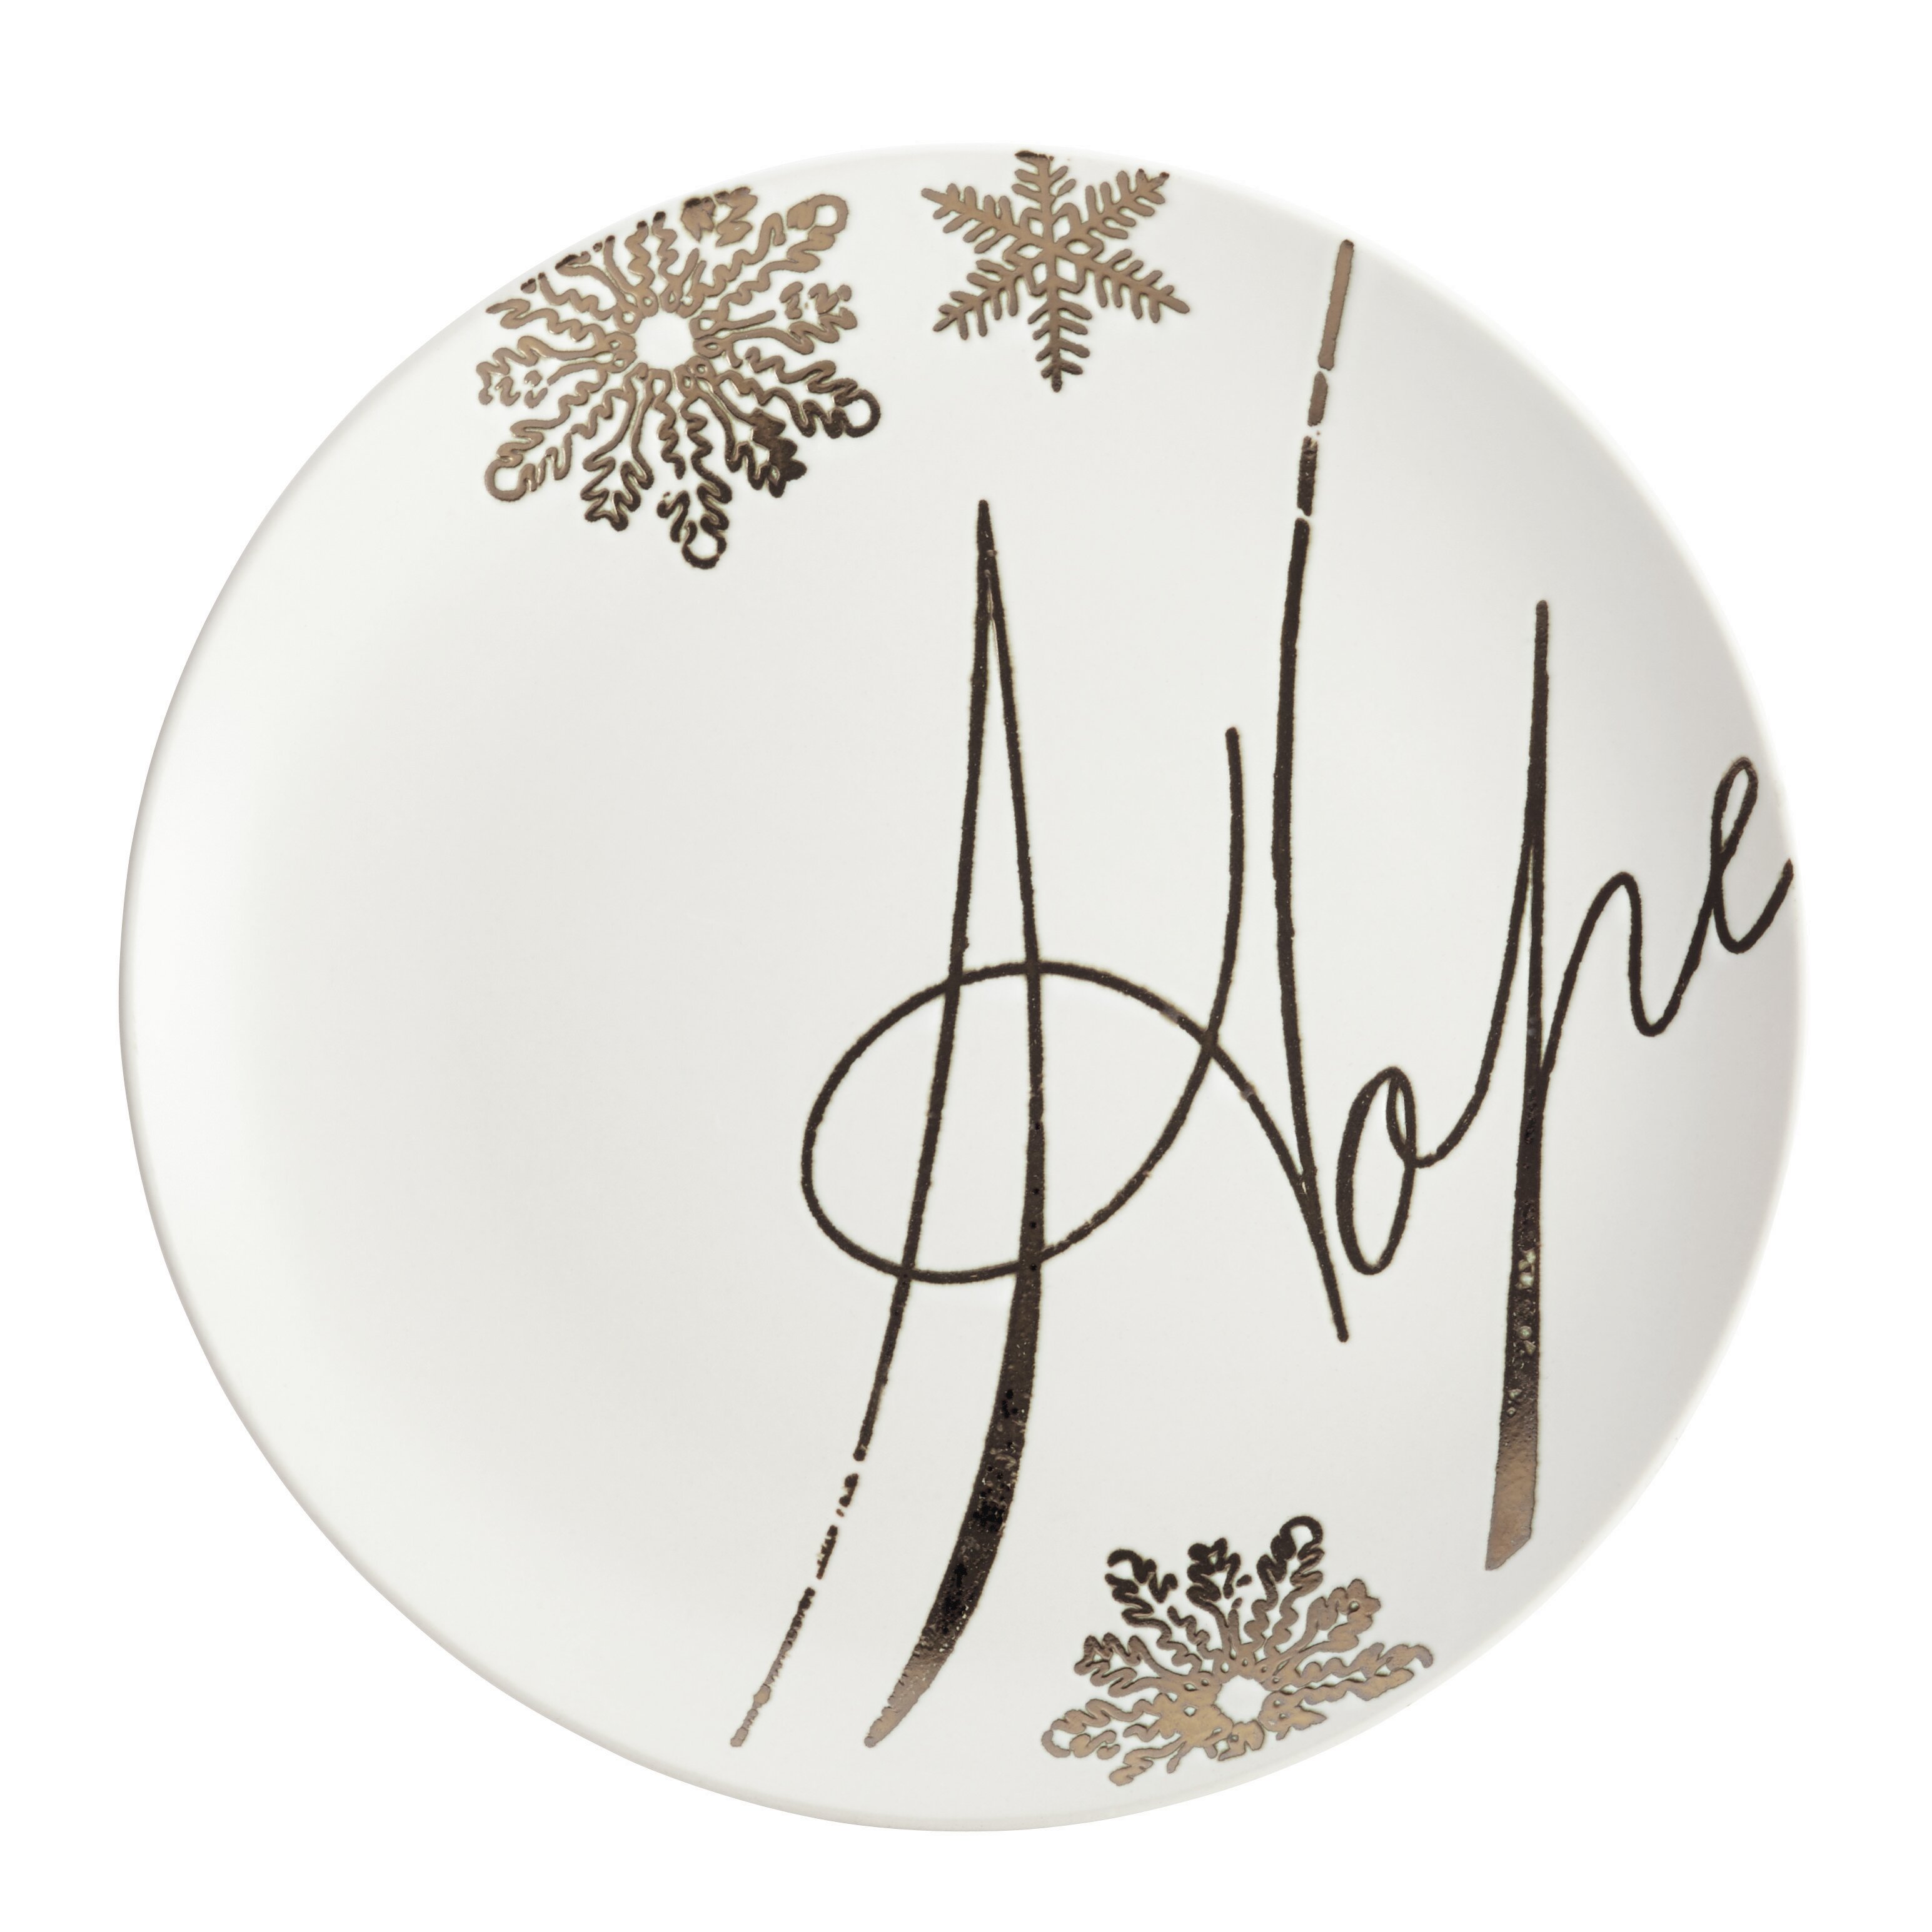 Paula Deen 4 Piece Holiday Dessert Plate Set & Reviews ...